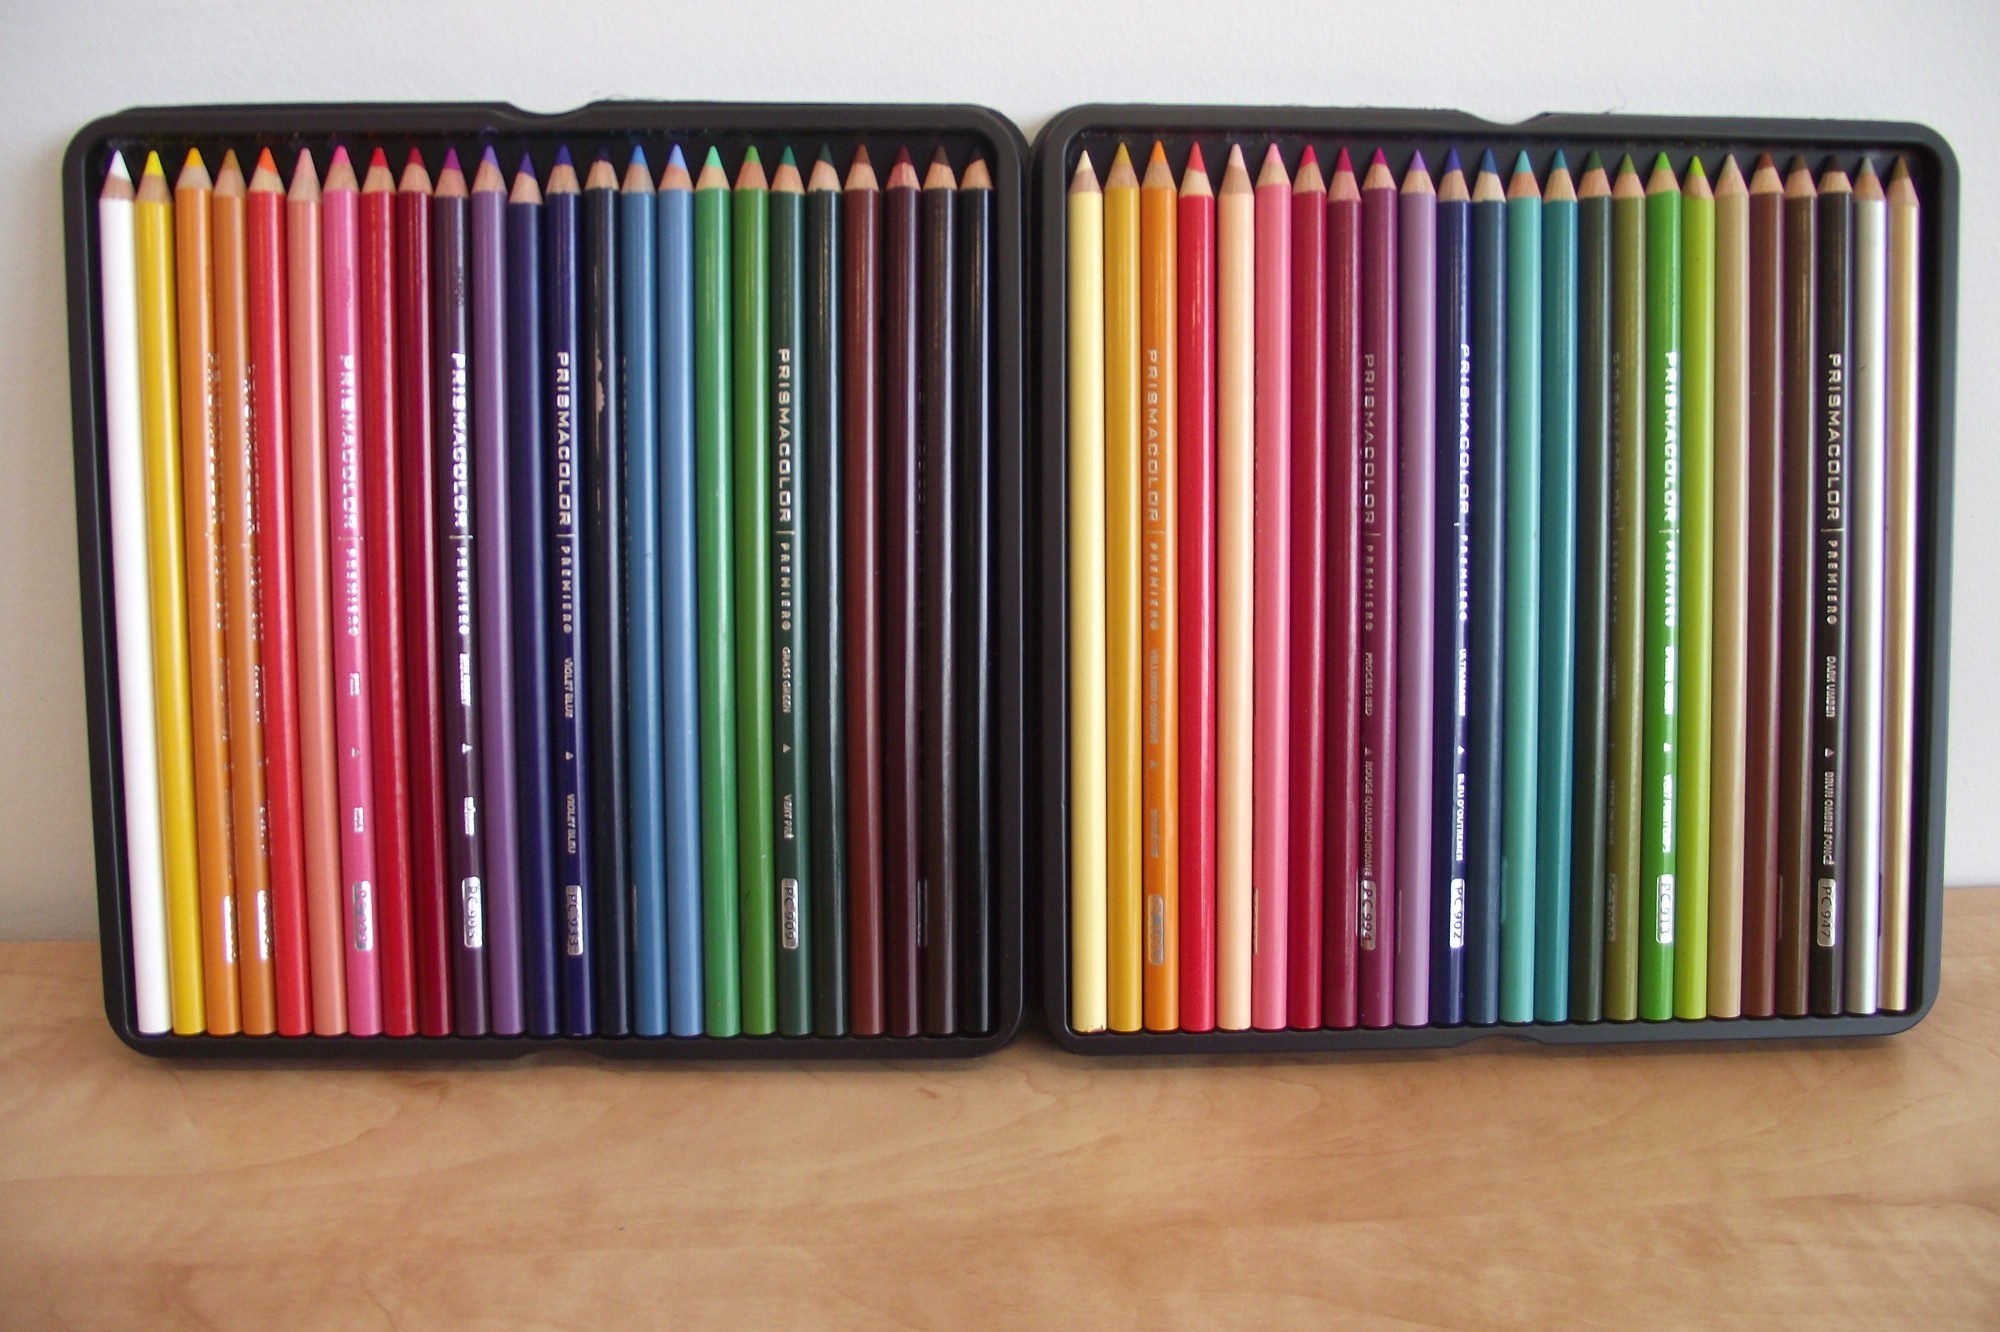 crayons de couleur prismacolor